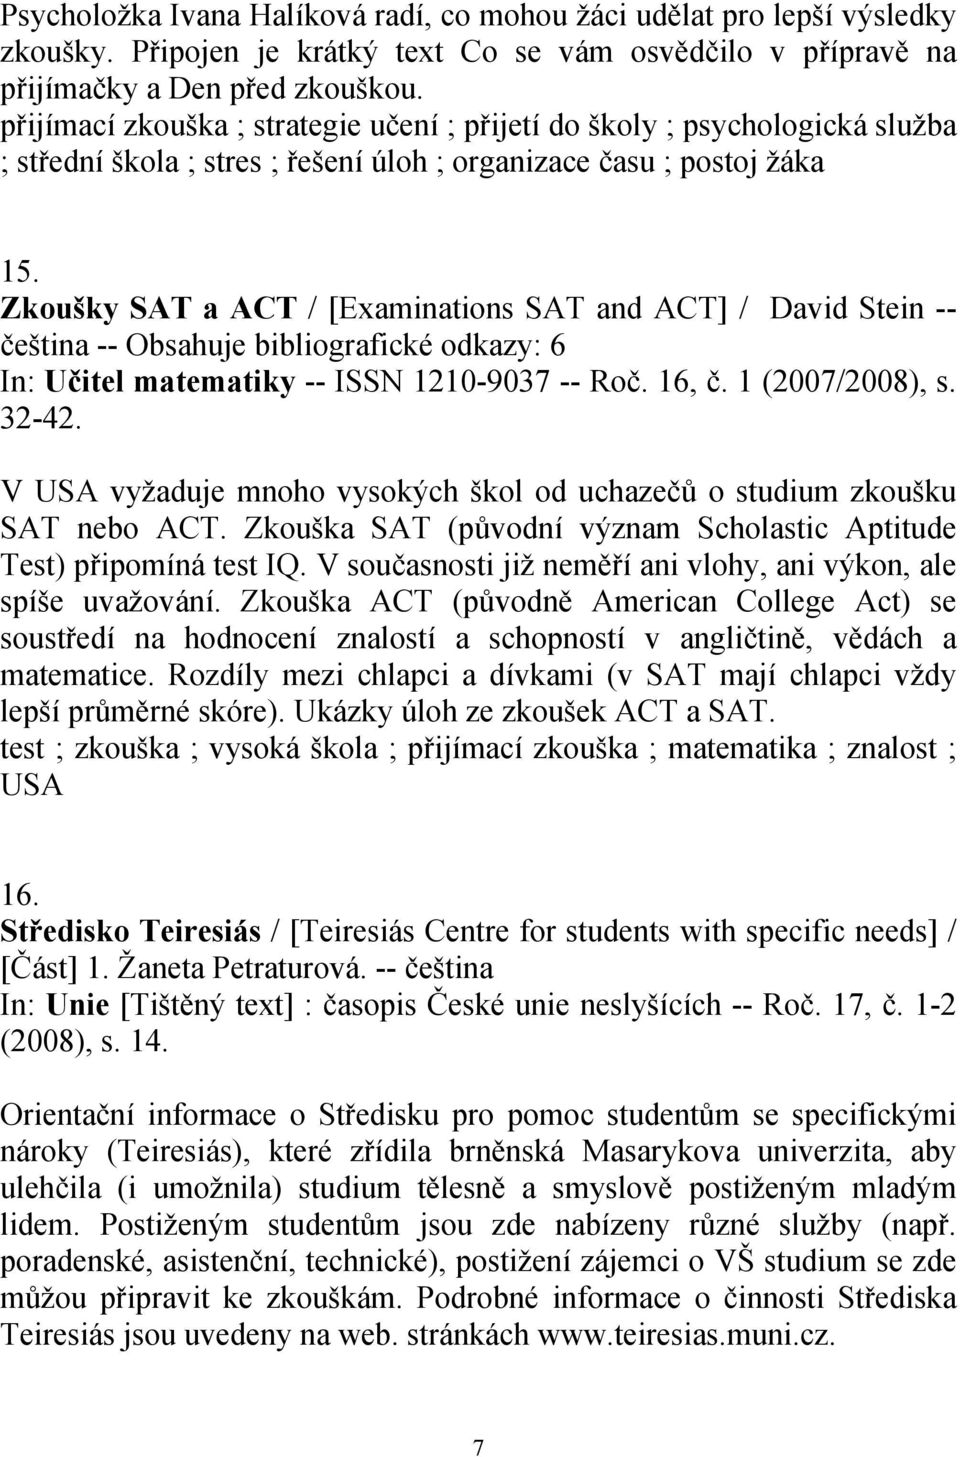 Zkoušky SAT a ACT / [Examinations SAT and ACT] / David Stein -- čeština -- Obsahuje bibliografické odkazy: 6 In: Učitel matematiky -- ISSN 1210-9037 -- Roč. 16, č. 1 (2007/2008), s. 32-42.